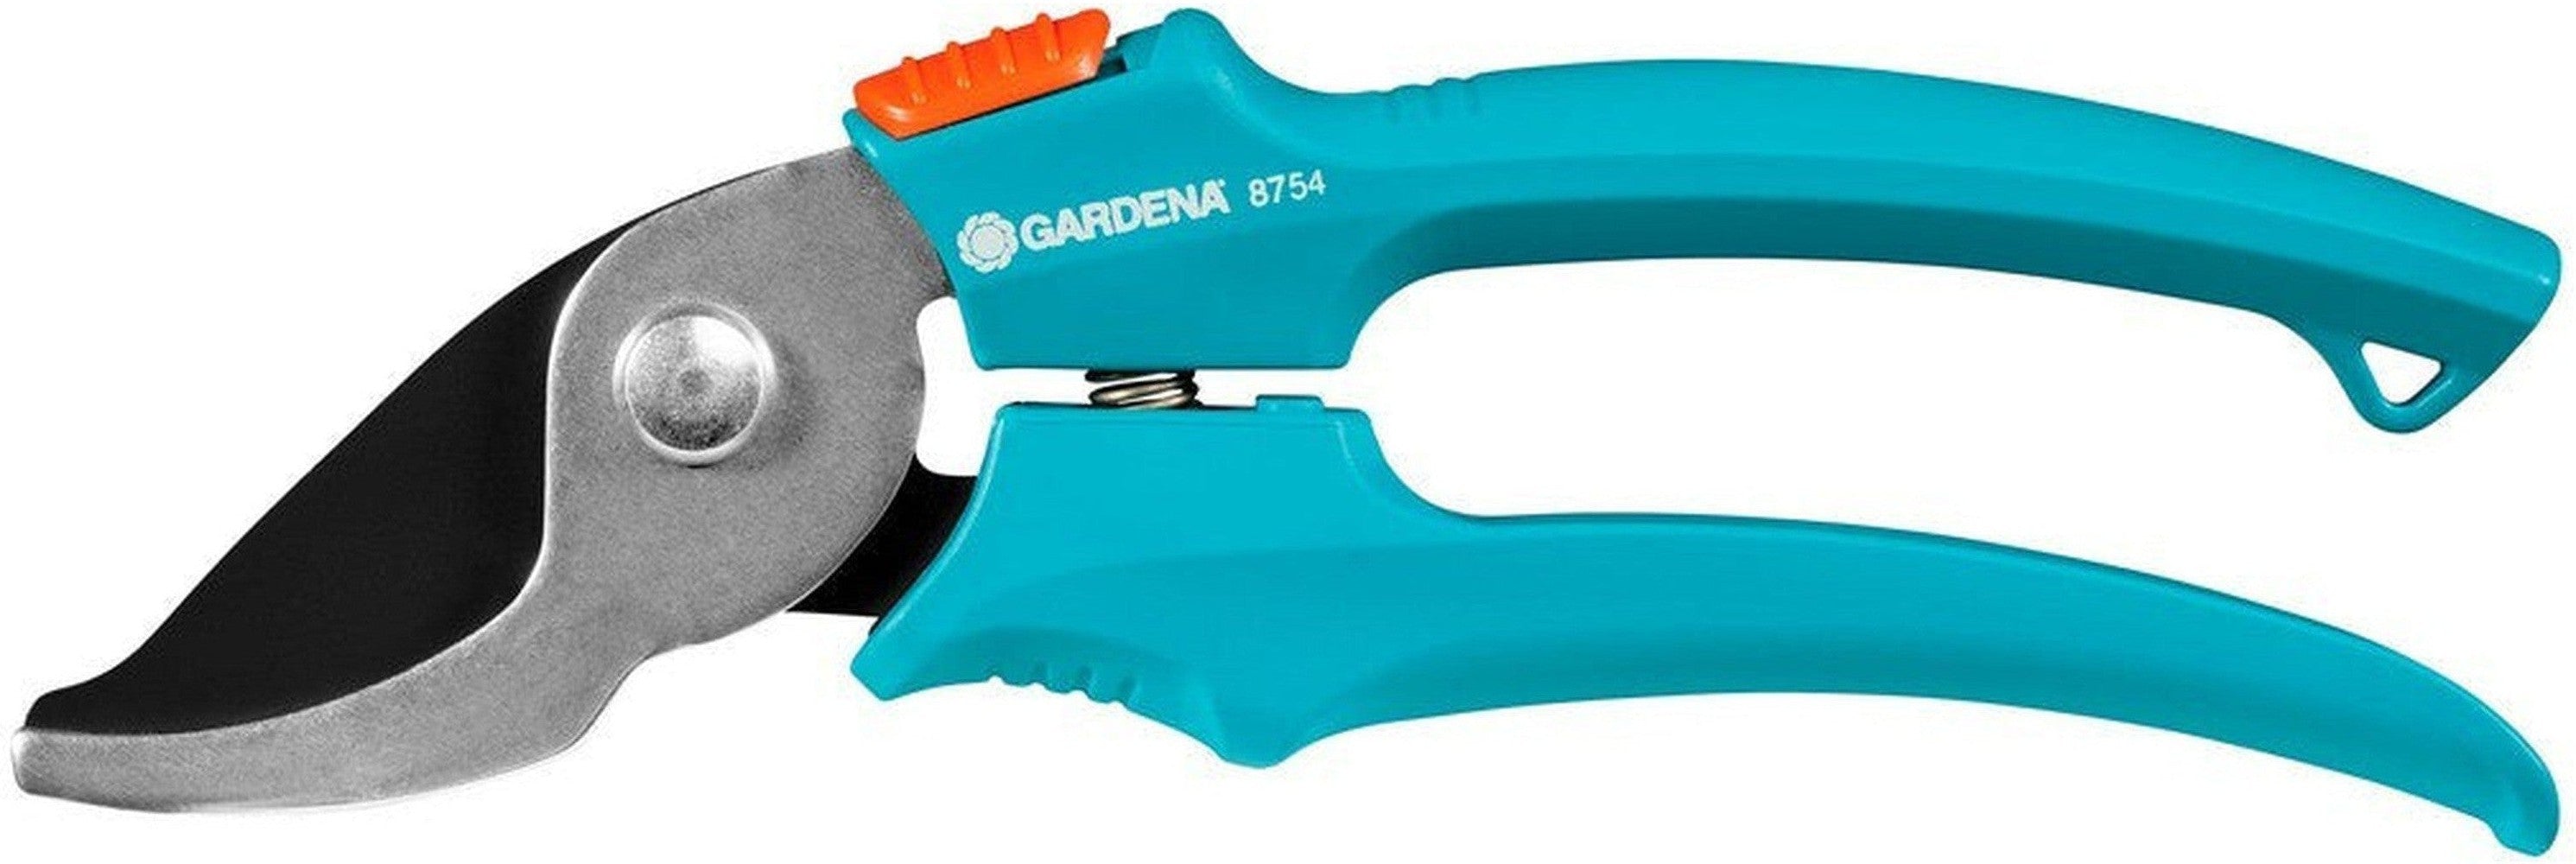 Beskärning Shears Gardena 8754-30 18 mm